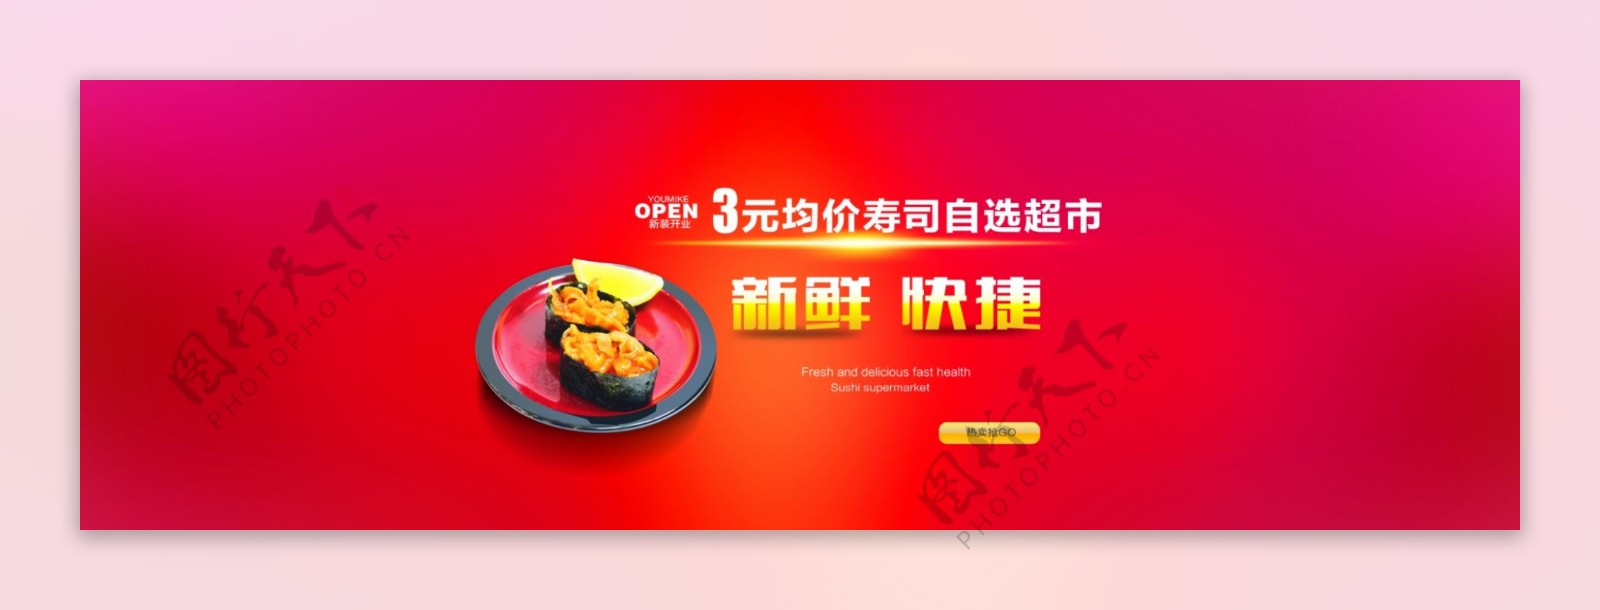 淘宝寿司促销广告